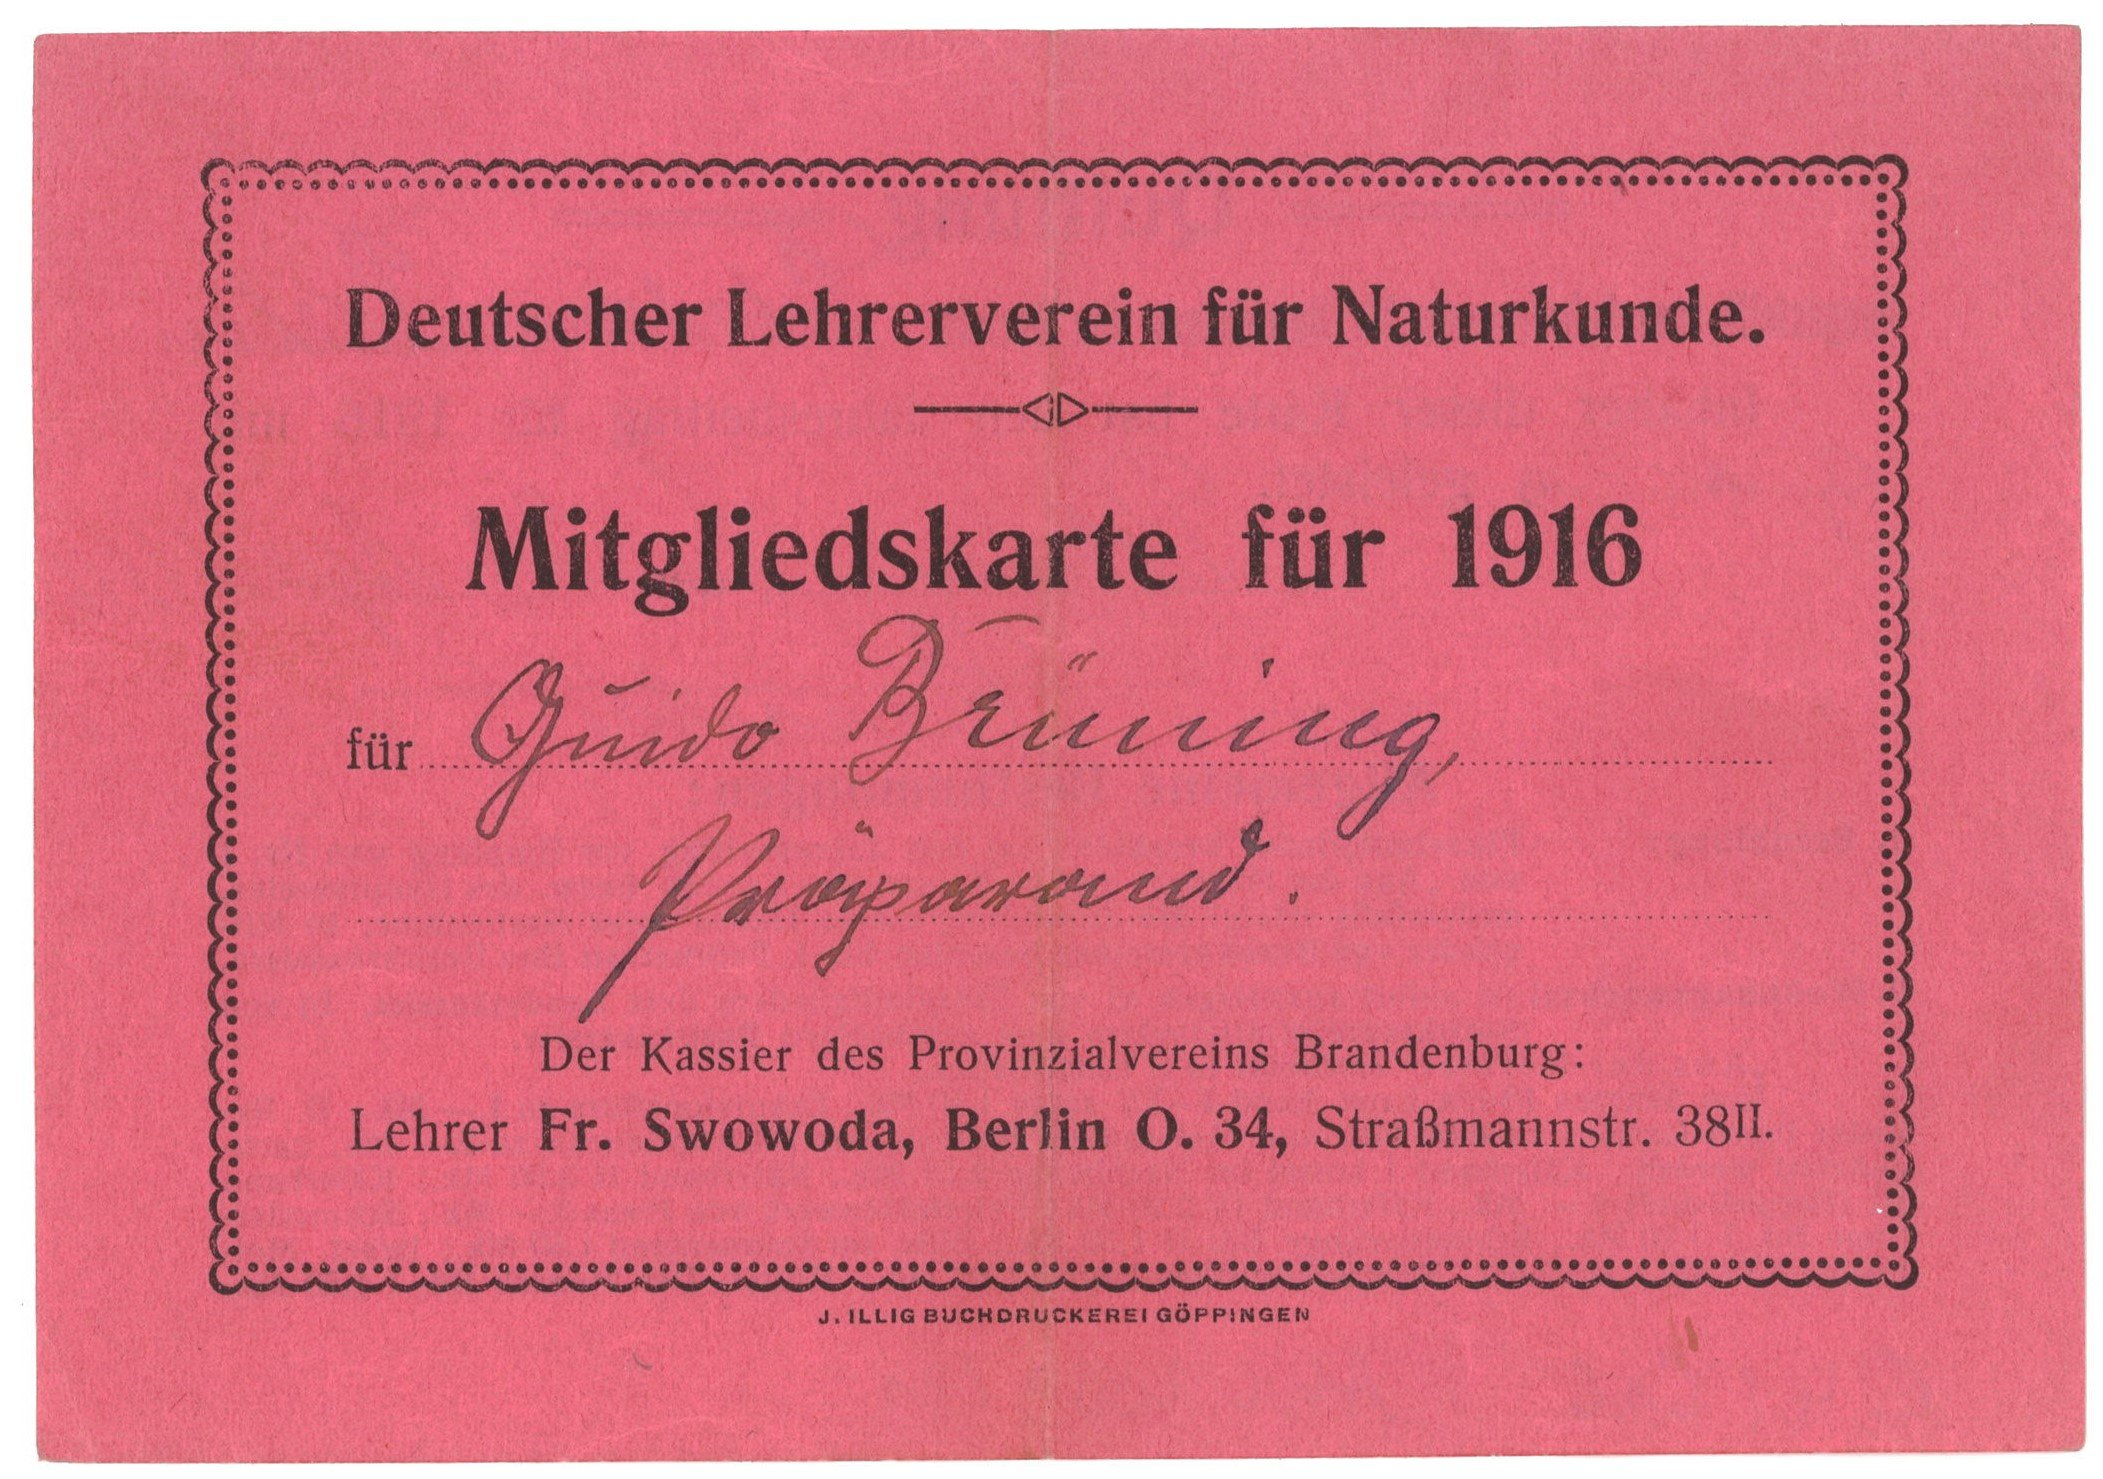 Mitgliedskarte des Deutschen Lehrervereins für Naturkunde für Guido Brüning 1916 (Landesgeschichtliche Vereinigung für die Mark Brandenburg e.V., Archiv CC BY)